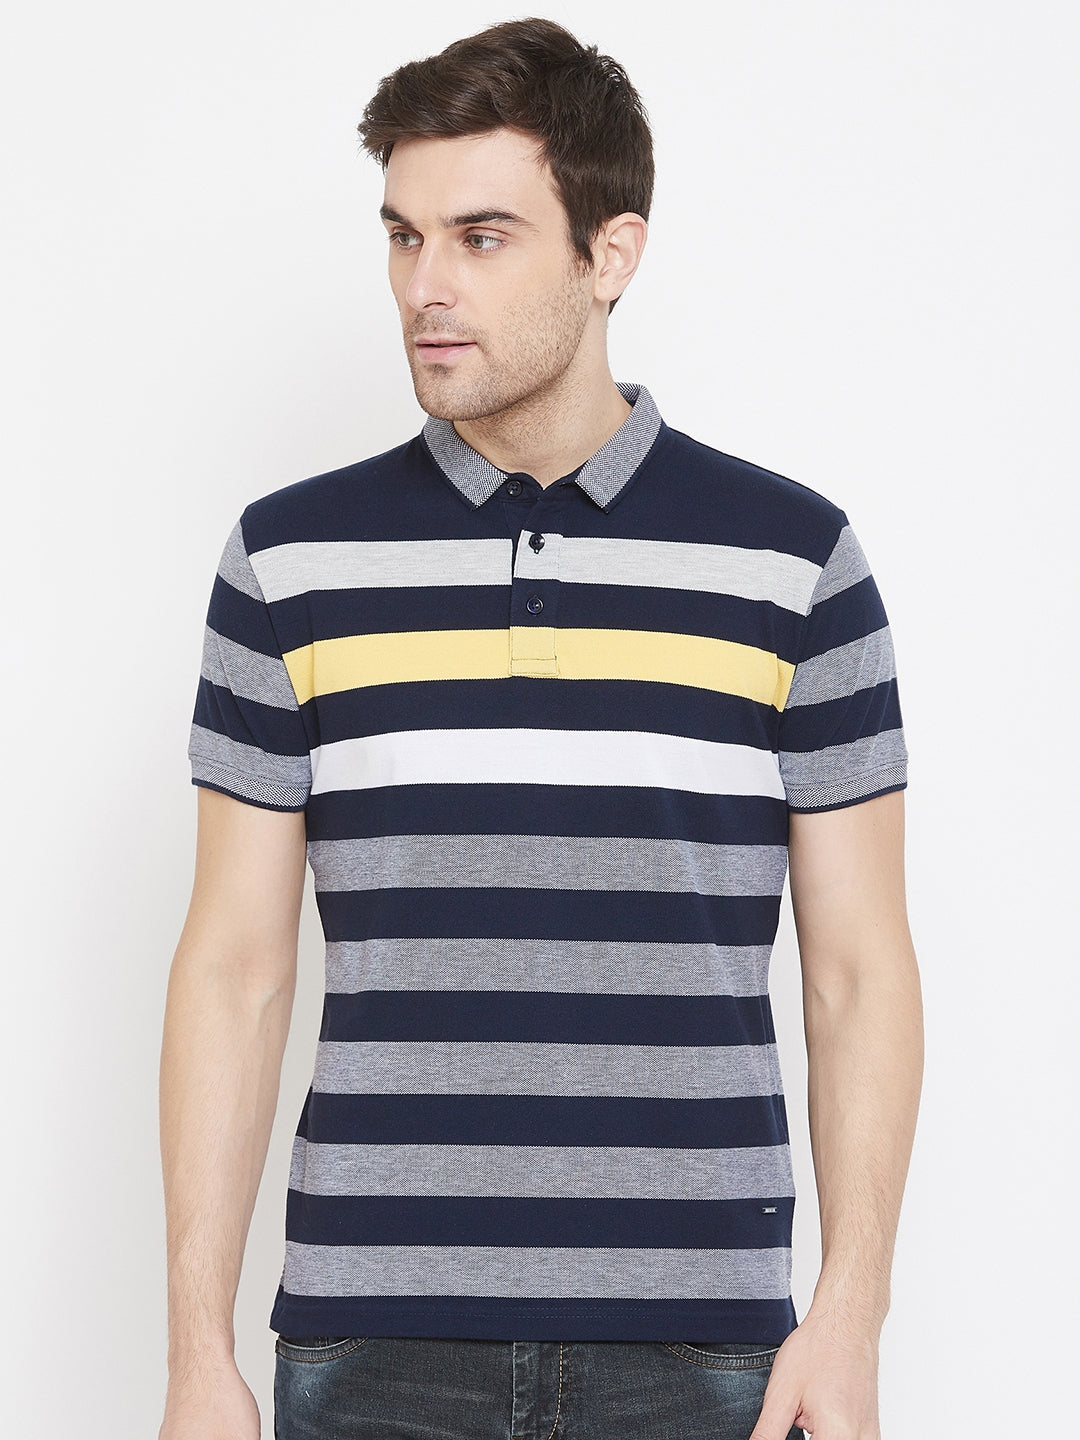 Navy Blue Striped T-shirt - Men T-Shirts